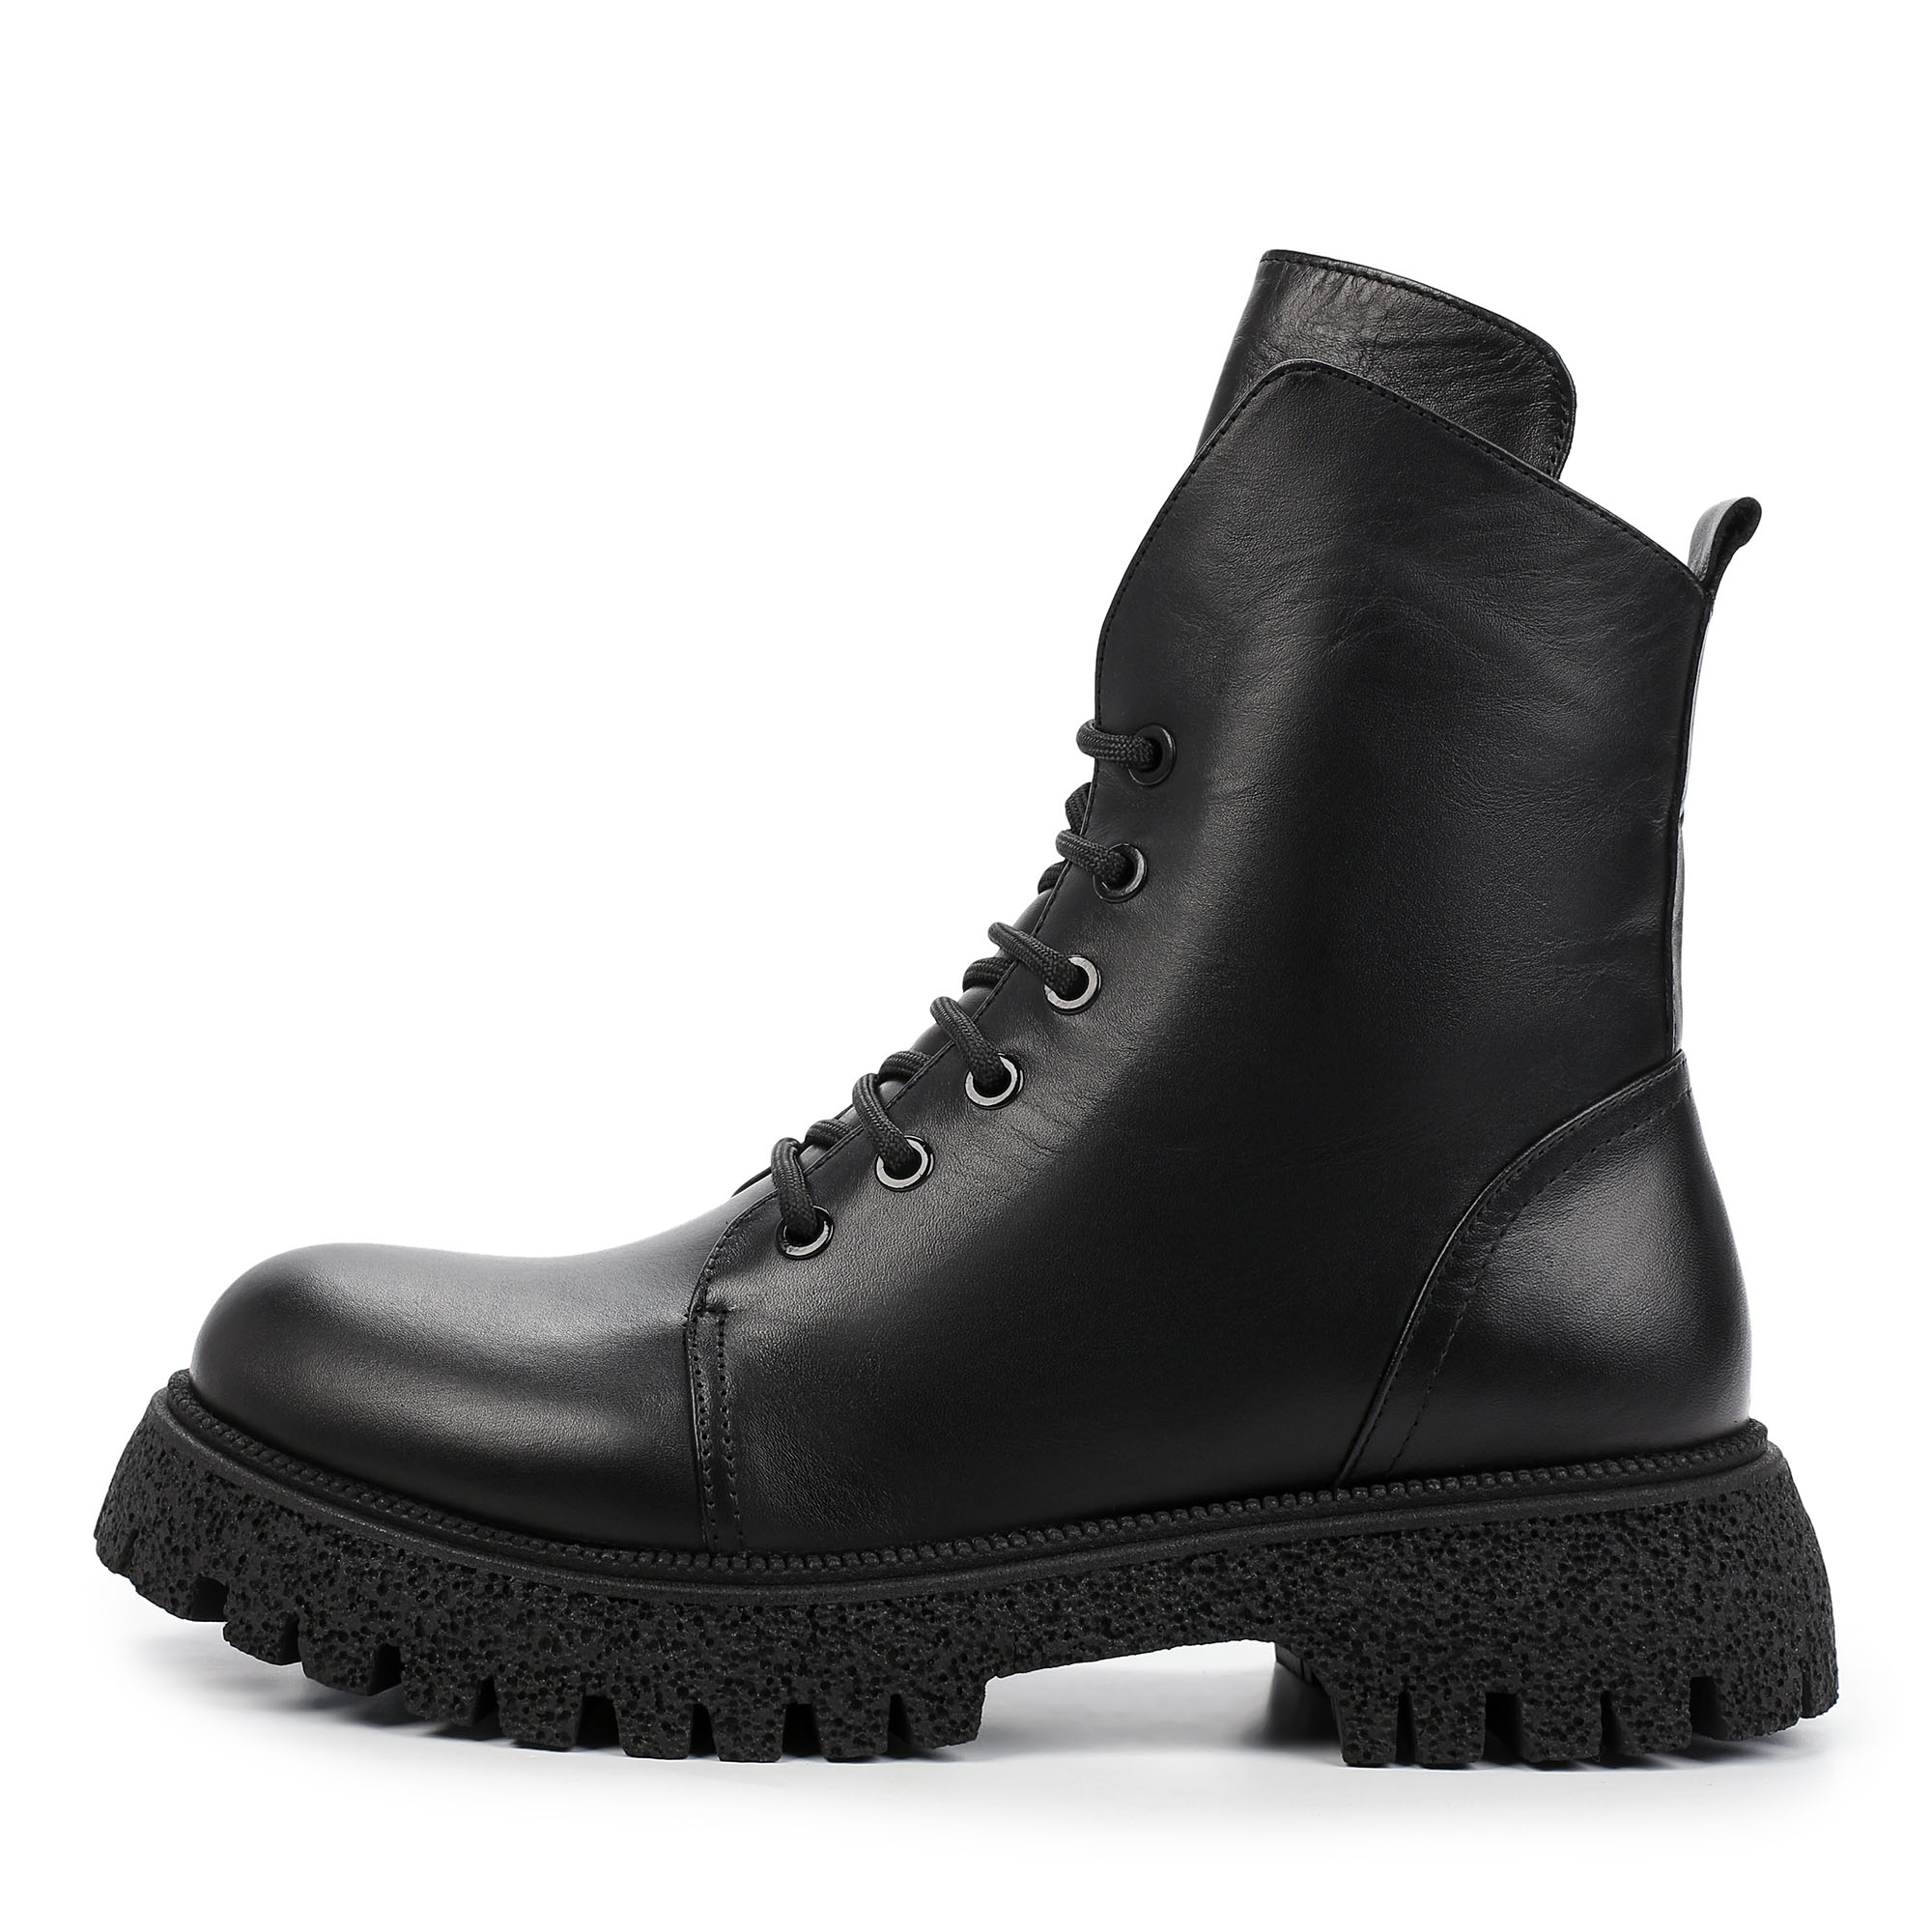 Ботинки Thomas Munz 506-165A-2102, цвет черный, размер 38